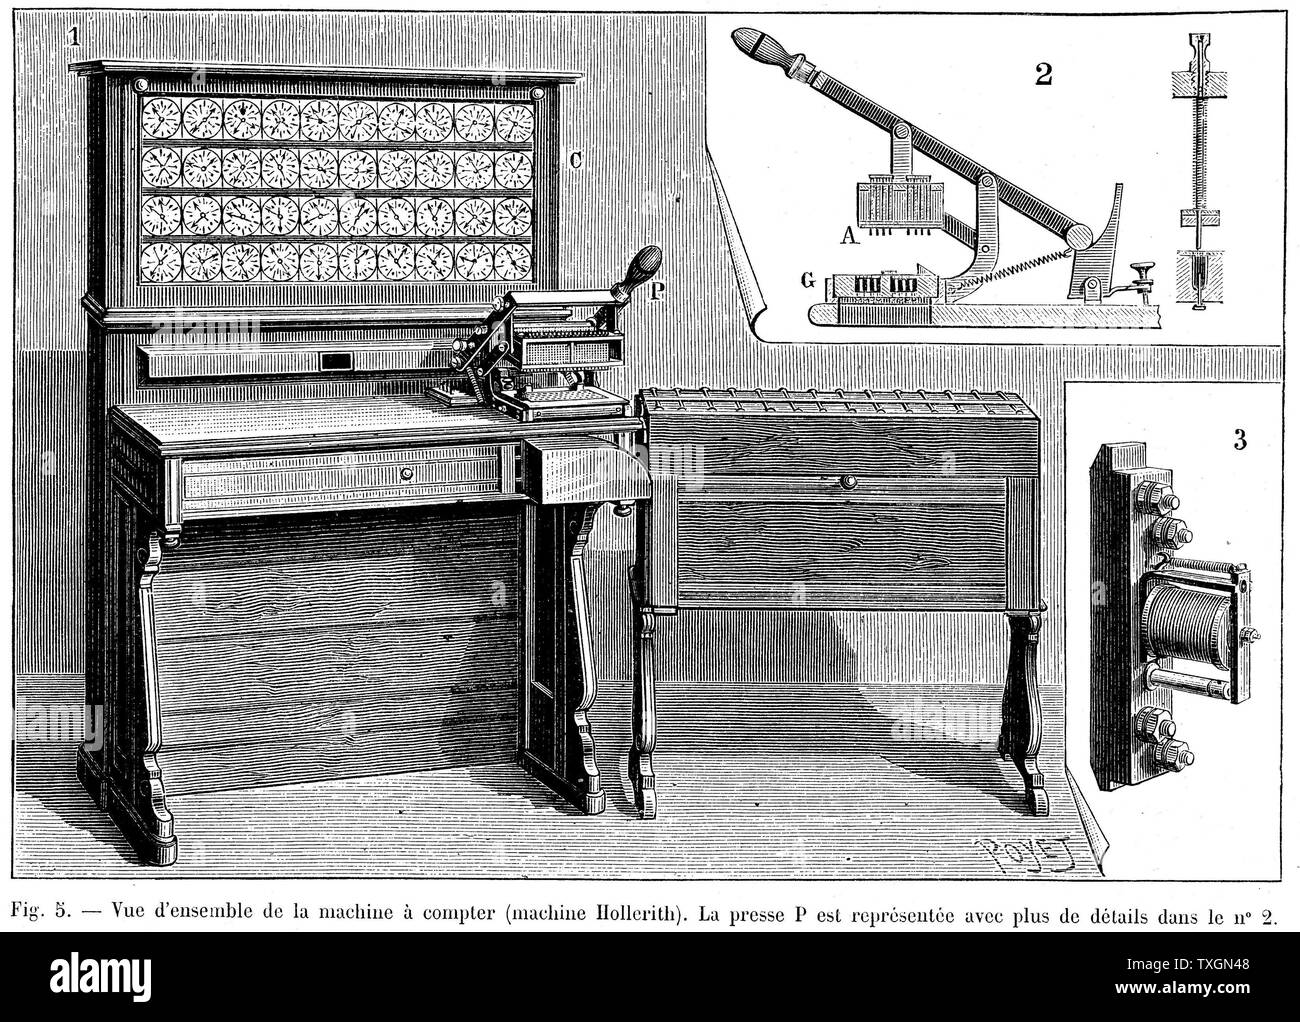 Tabulatrice Hollerith qui utilisait une carte perforée système de mémoire. Utilisé pour la première fois dans le recensement des États-Unis de 1890 Gravure, Paris, 1894 Banque D'Images